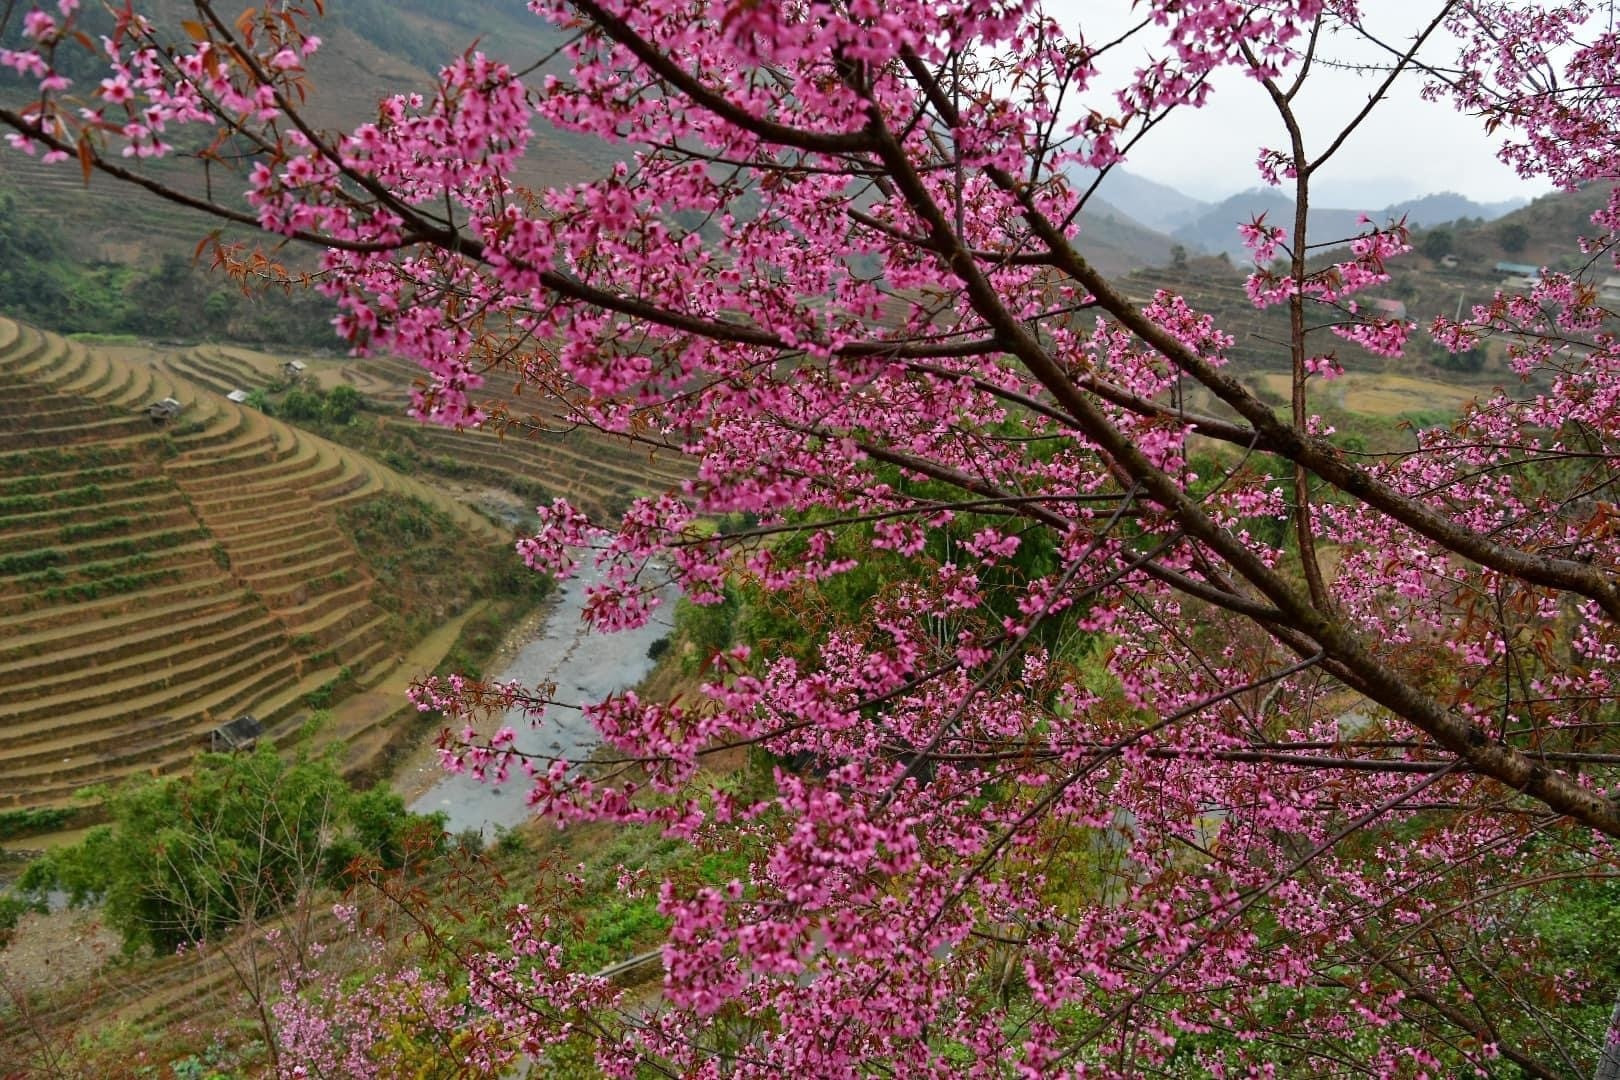 Chiêm ngưỡng sắc hoa tớ dày nhuộm hồng núi rừng Mù Cang Chải - 11